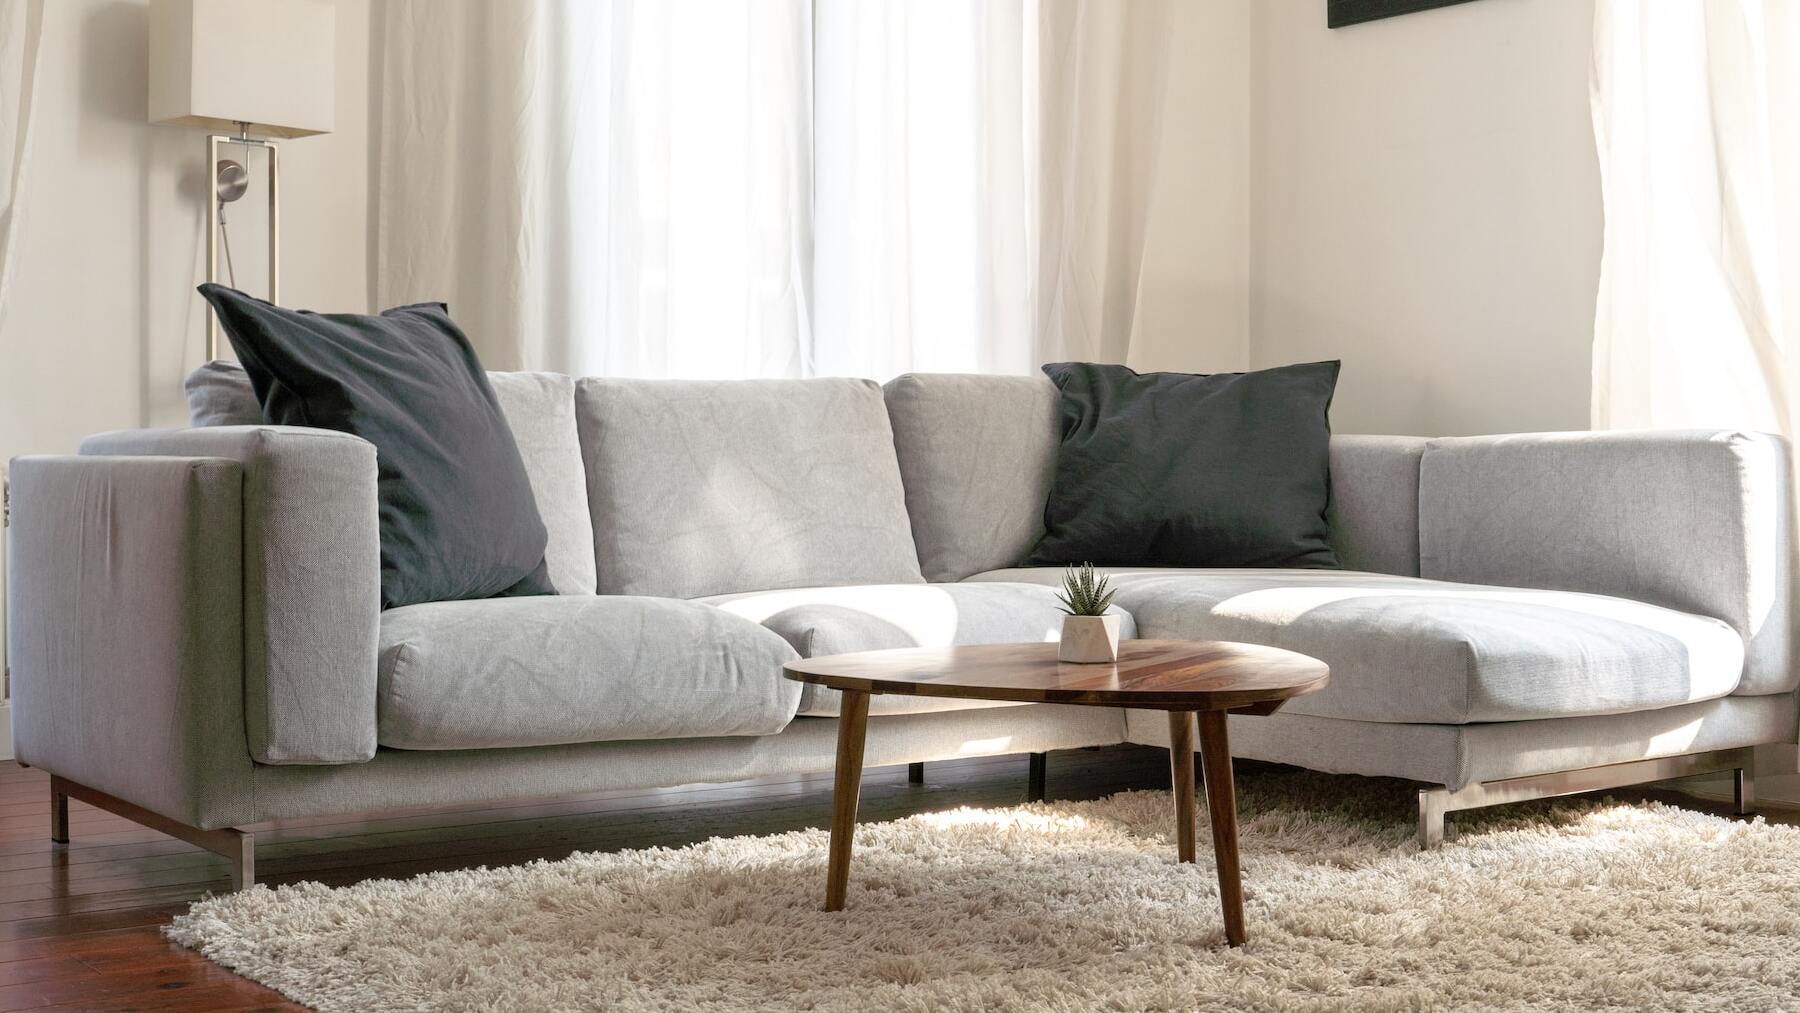 El truco que necesitas saber para quitar las manchas de tu sofá de manera fácil, barata y rápida